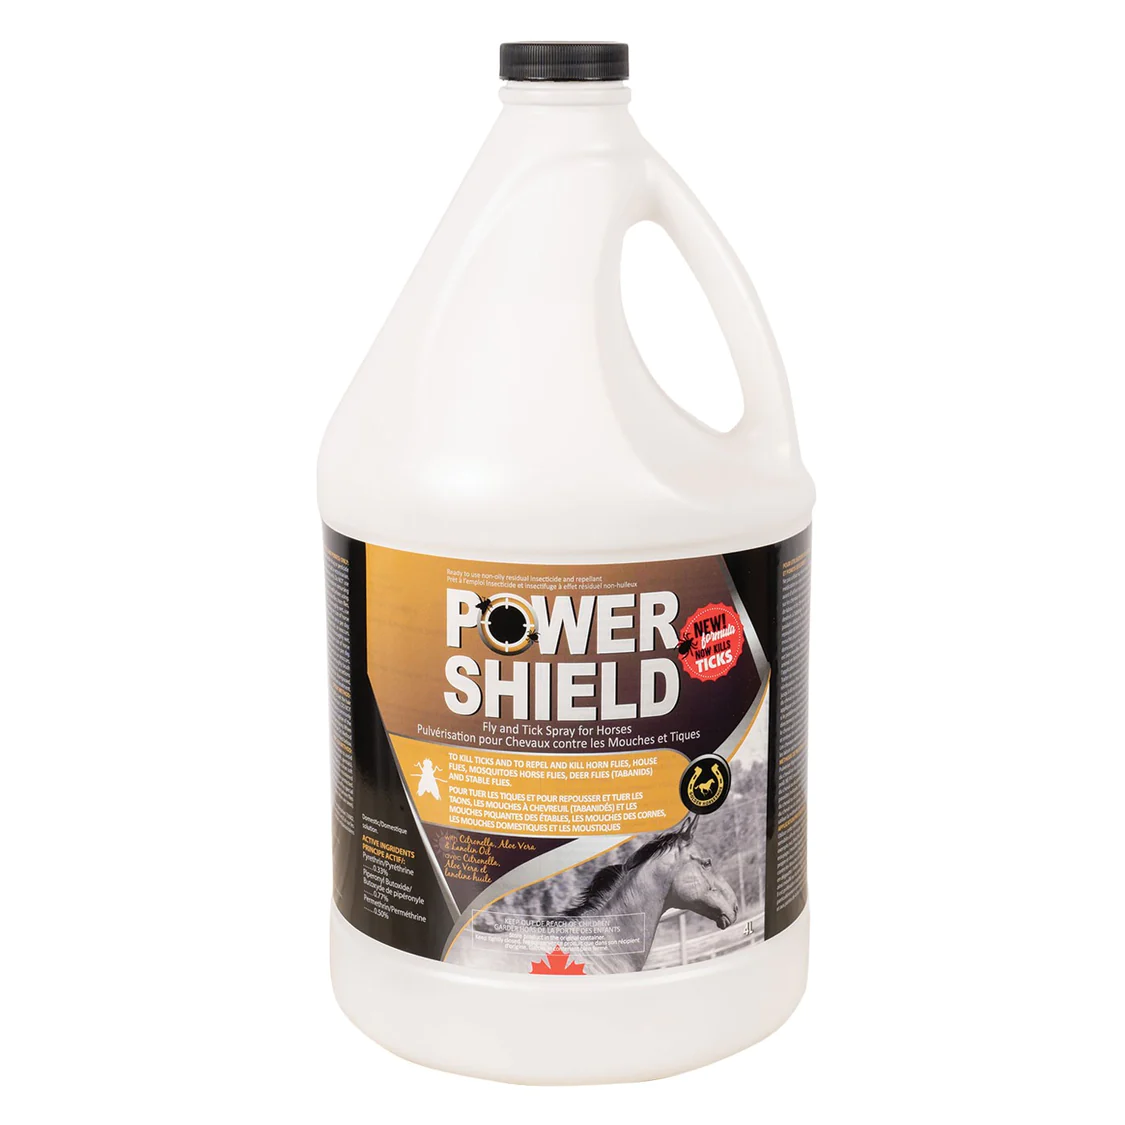 Power shield fly spray